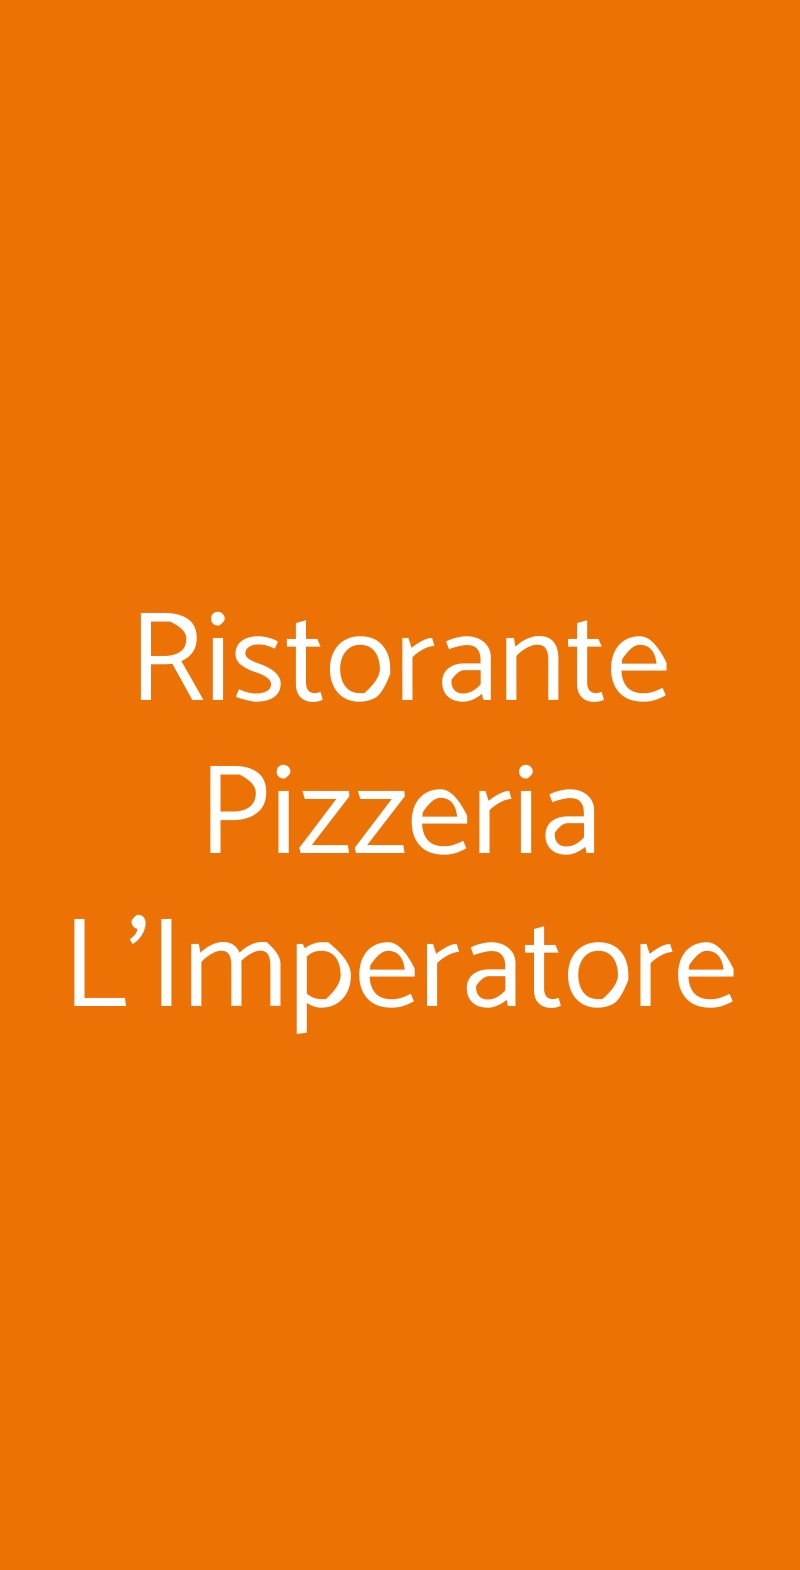 Ristorante Pizzeria L'Imperatore Milano menù 1 pagina